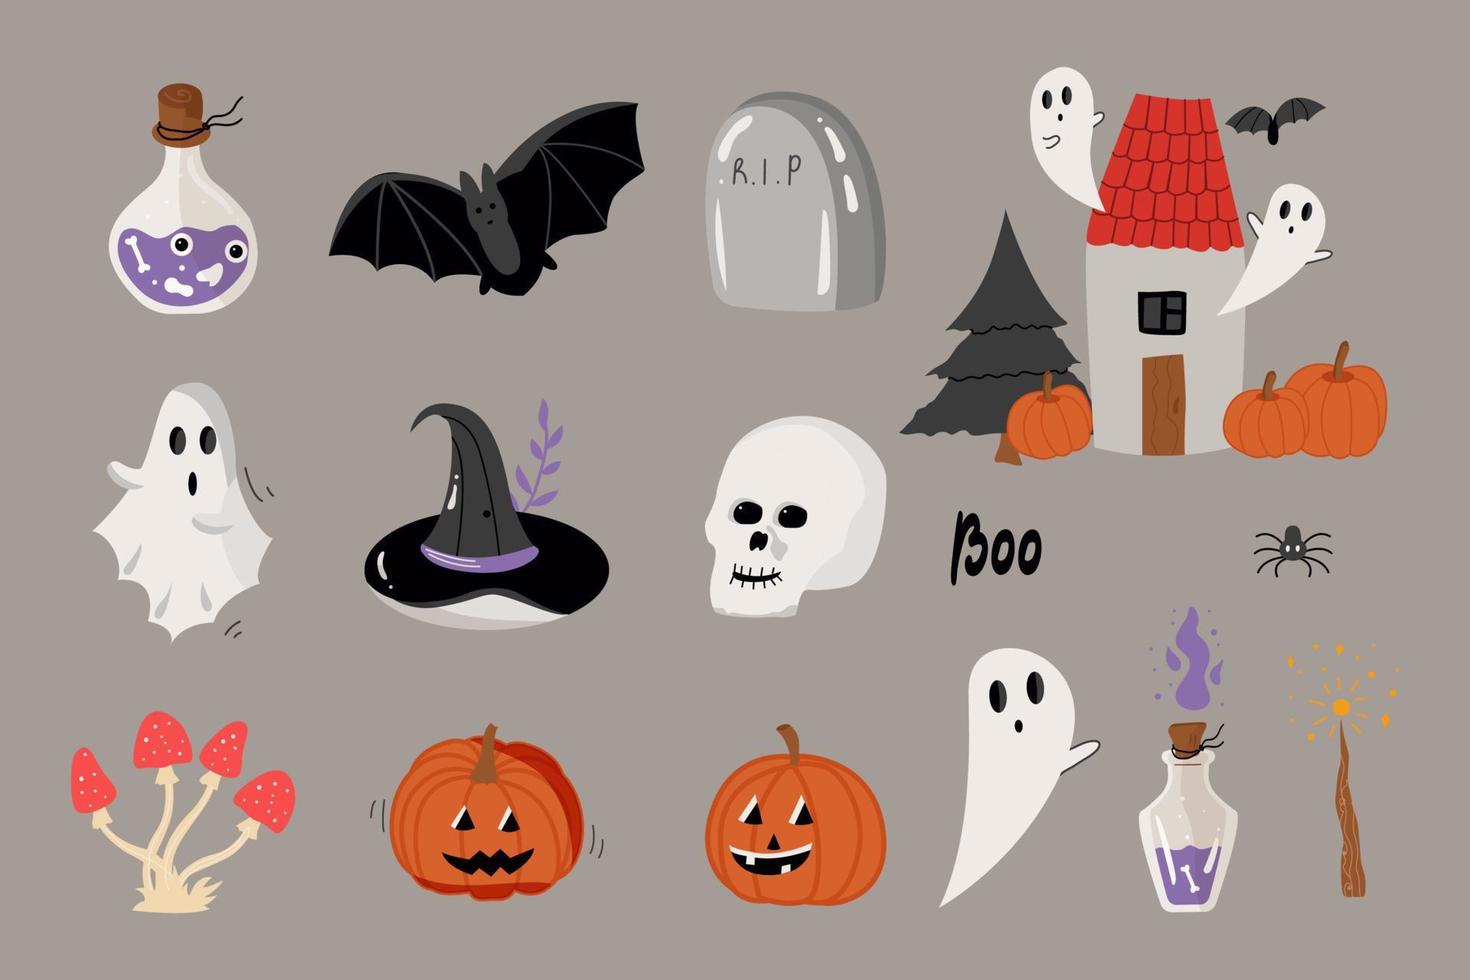 uppsättning av leende och roliga illustrationer för halloween pumpor, spöke, fladdermus, hus. uppsättning isolerade ikoner, vektorillustration. vektor